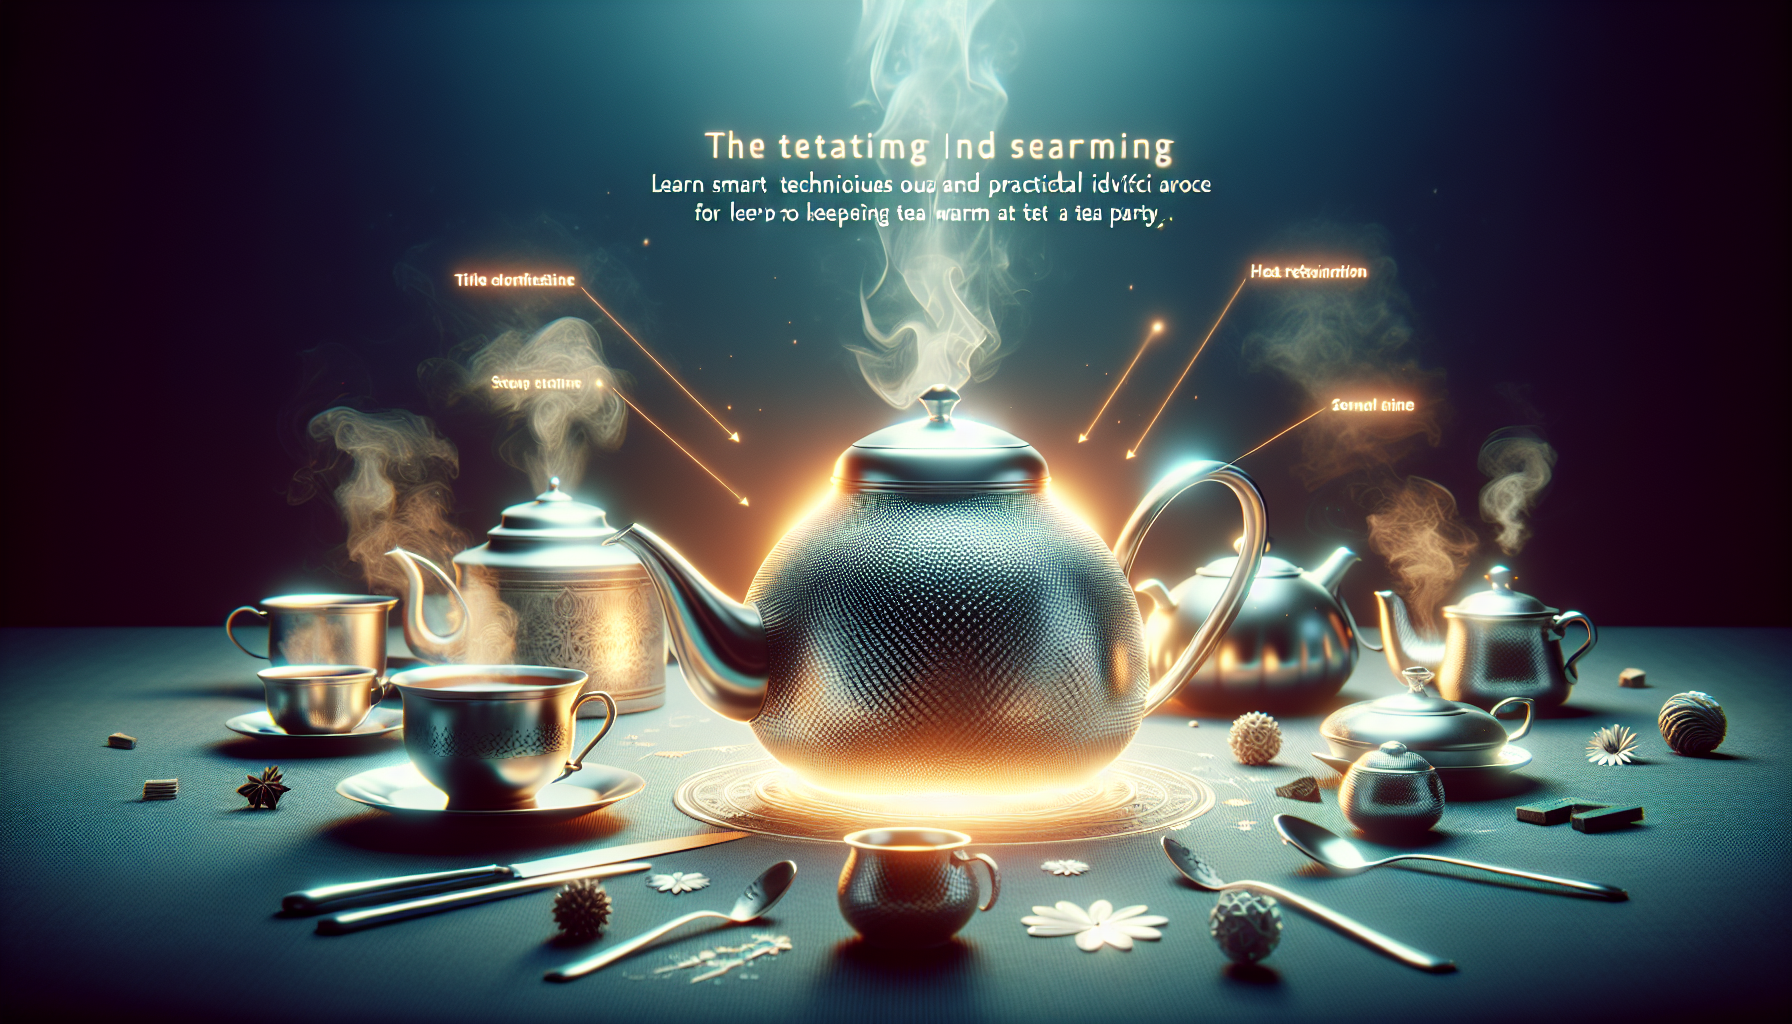 How Do You Keep Tea Warm At A Tea Party?